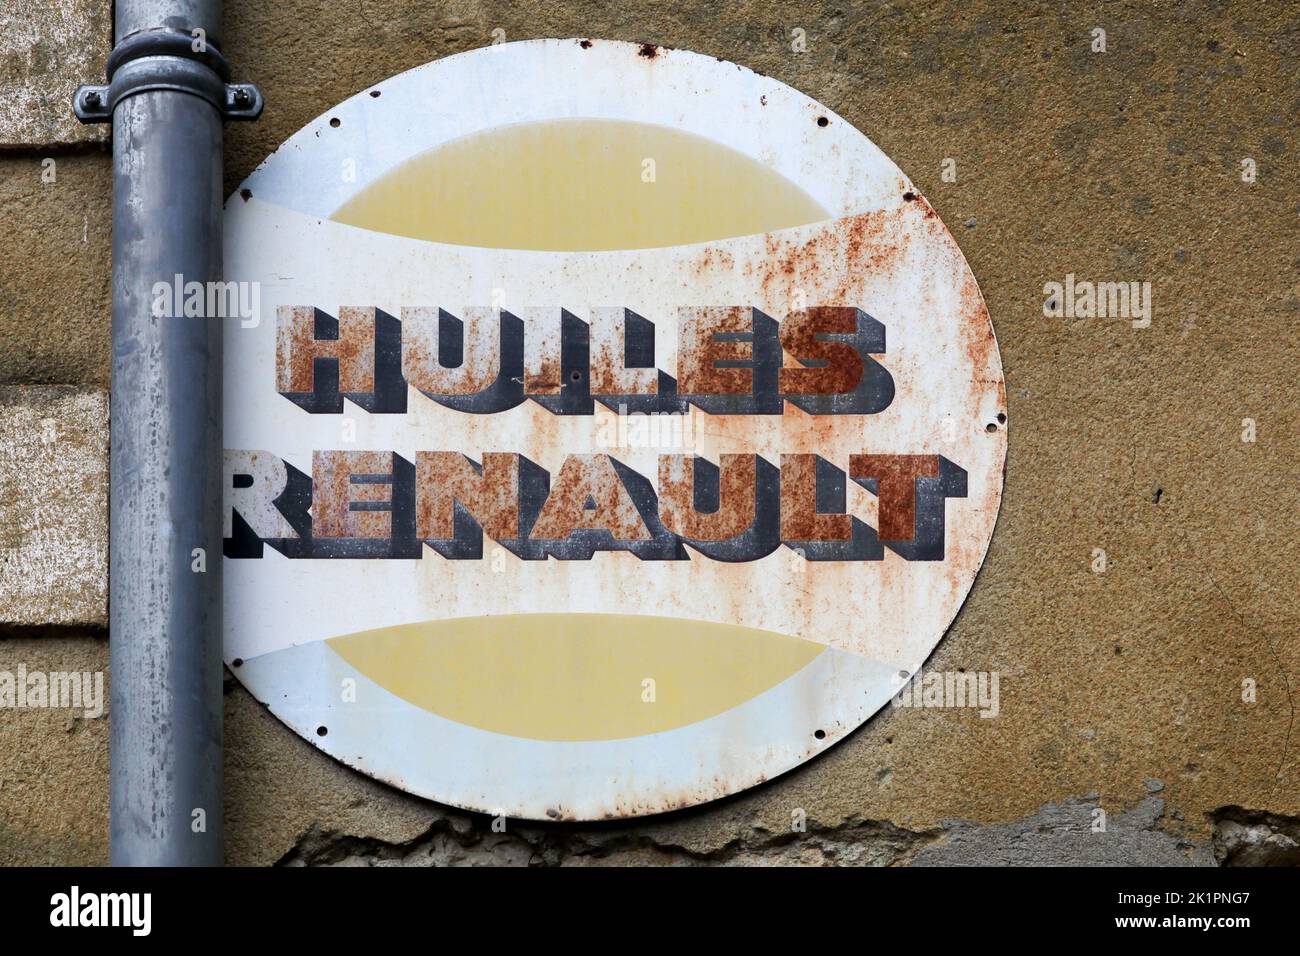 Le Vigan, Francia - 26 de junio de 2021: La vieja publicidad de Huiles Renault en una pared Foto de stock